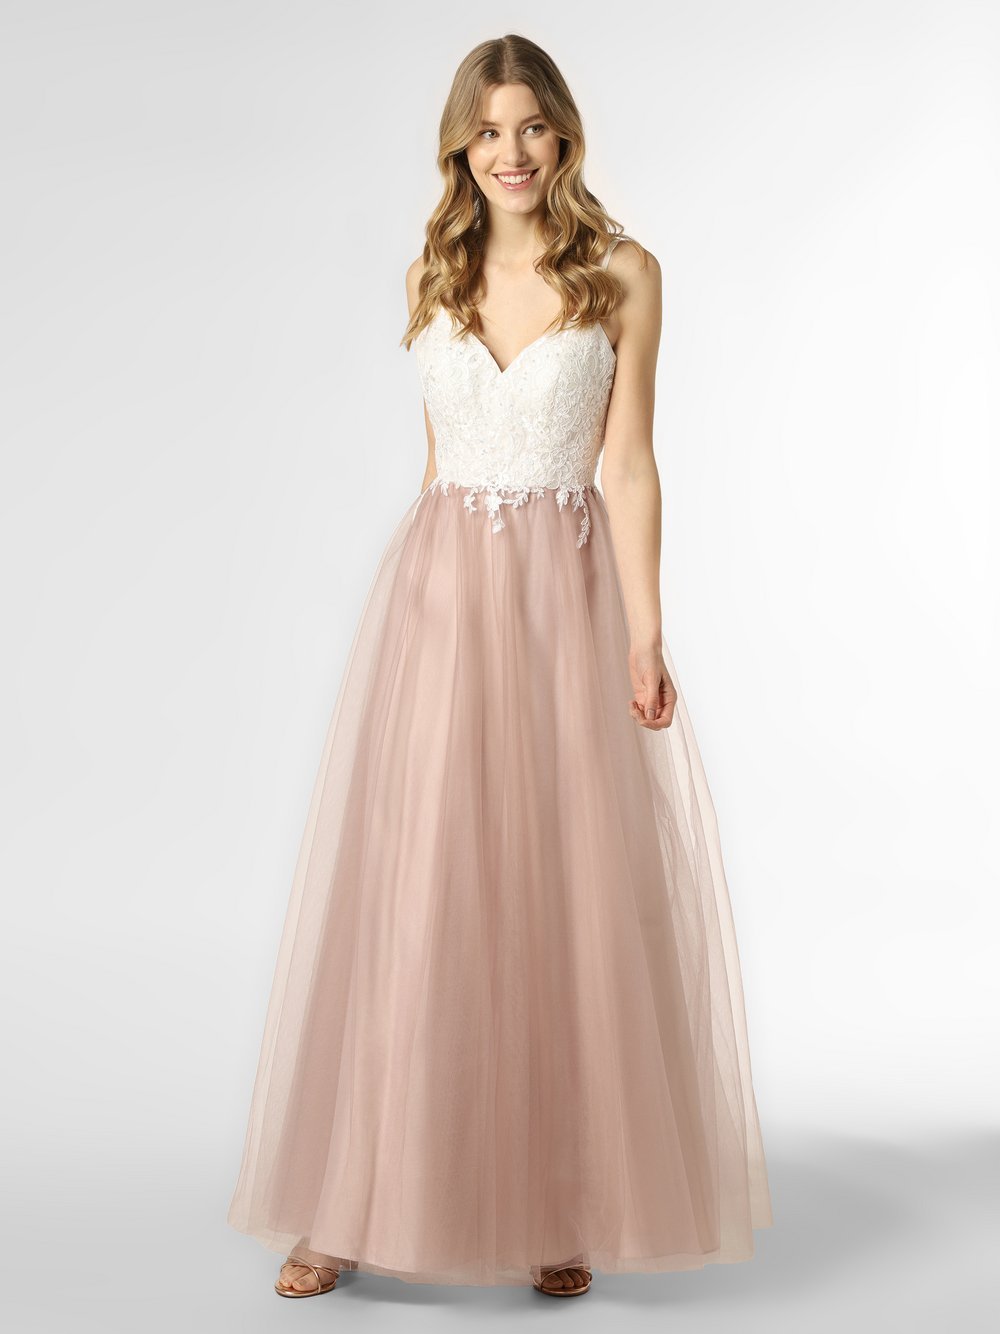 Luxuar Fashion - Damska sukienka wieczorowa, biały|różowy